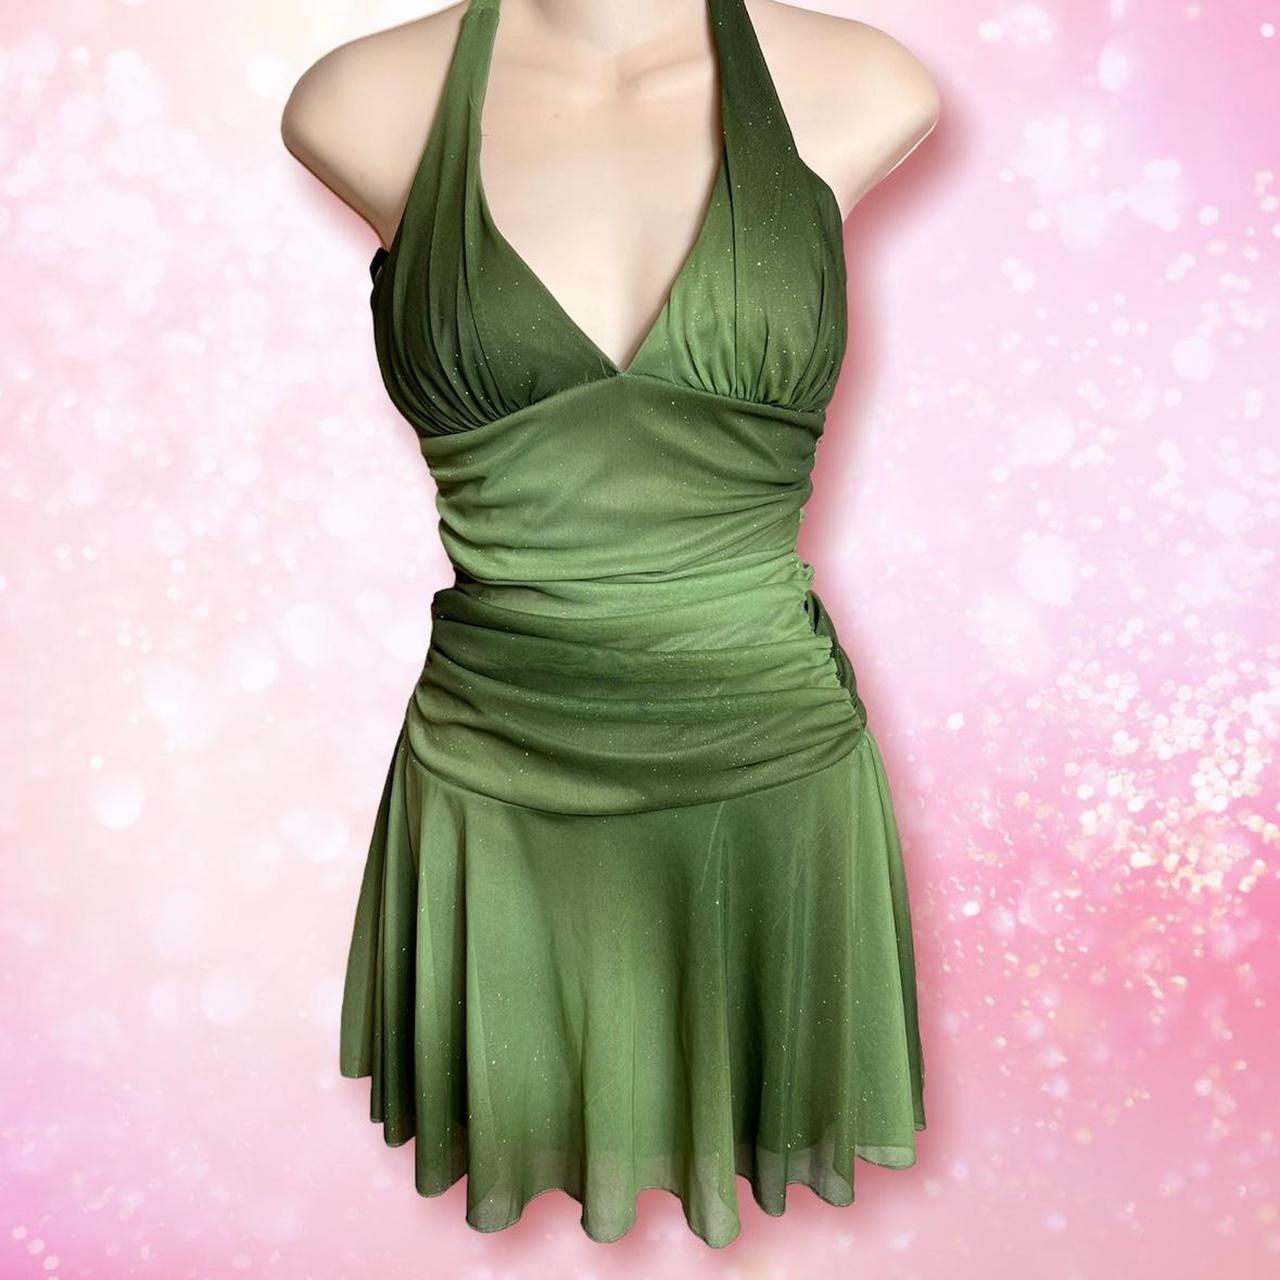 Taboo Green Glitter Dress Tag size small, halter... - Depop